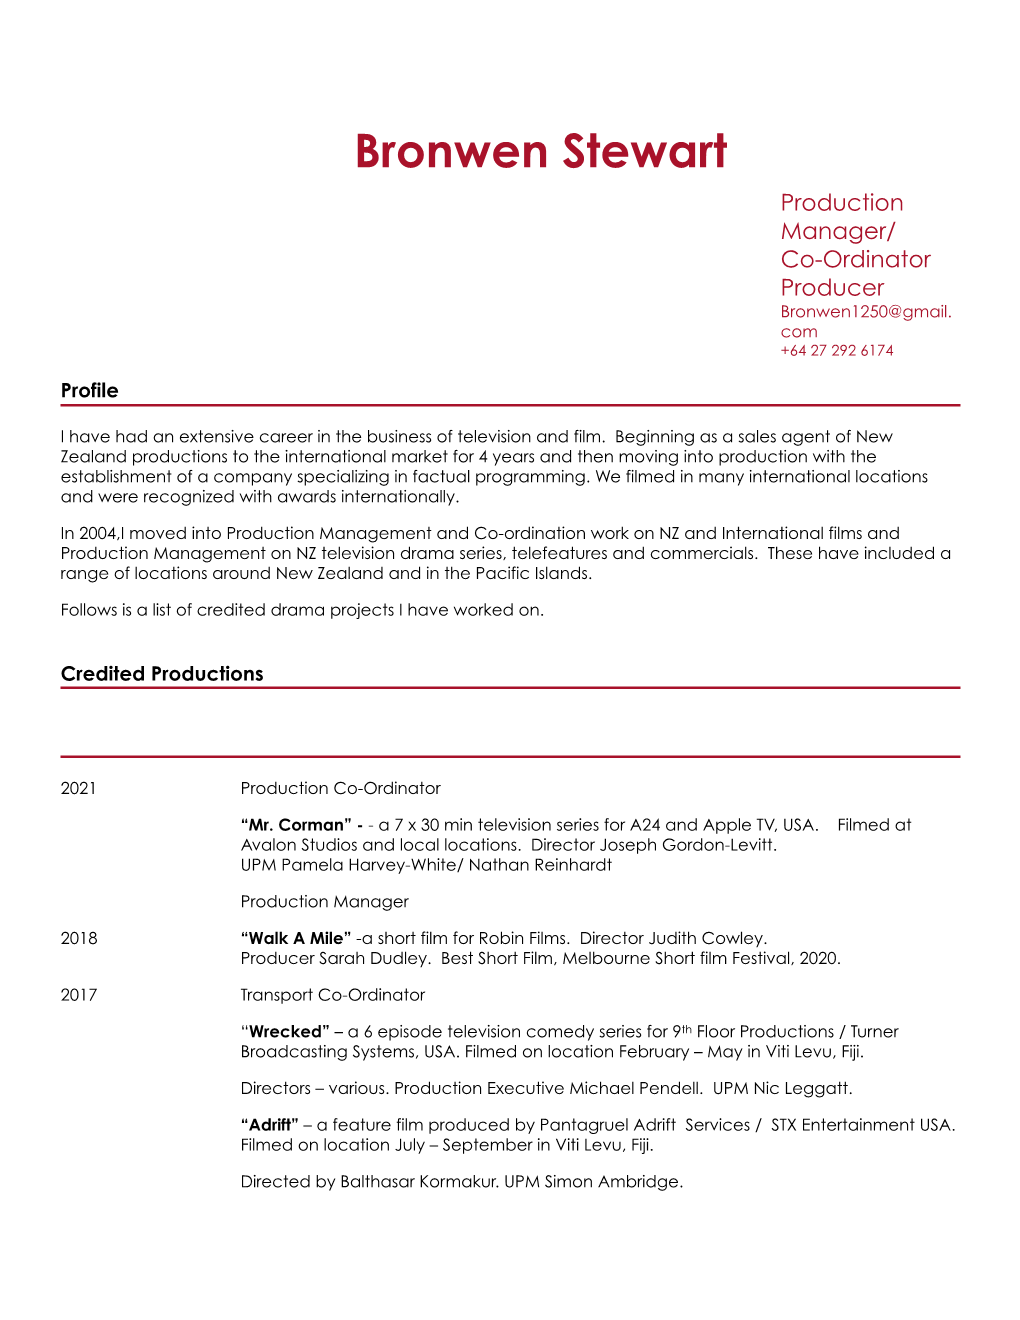 Bronwen Stewart 2020 CV